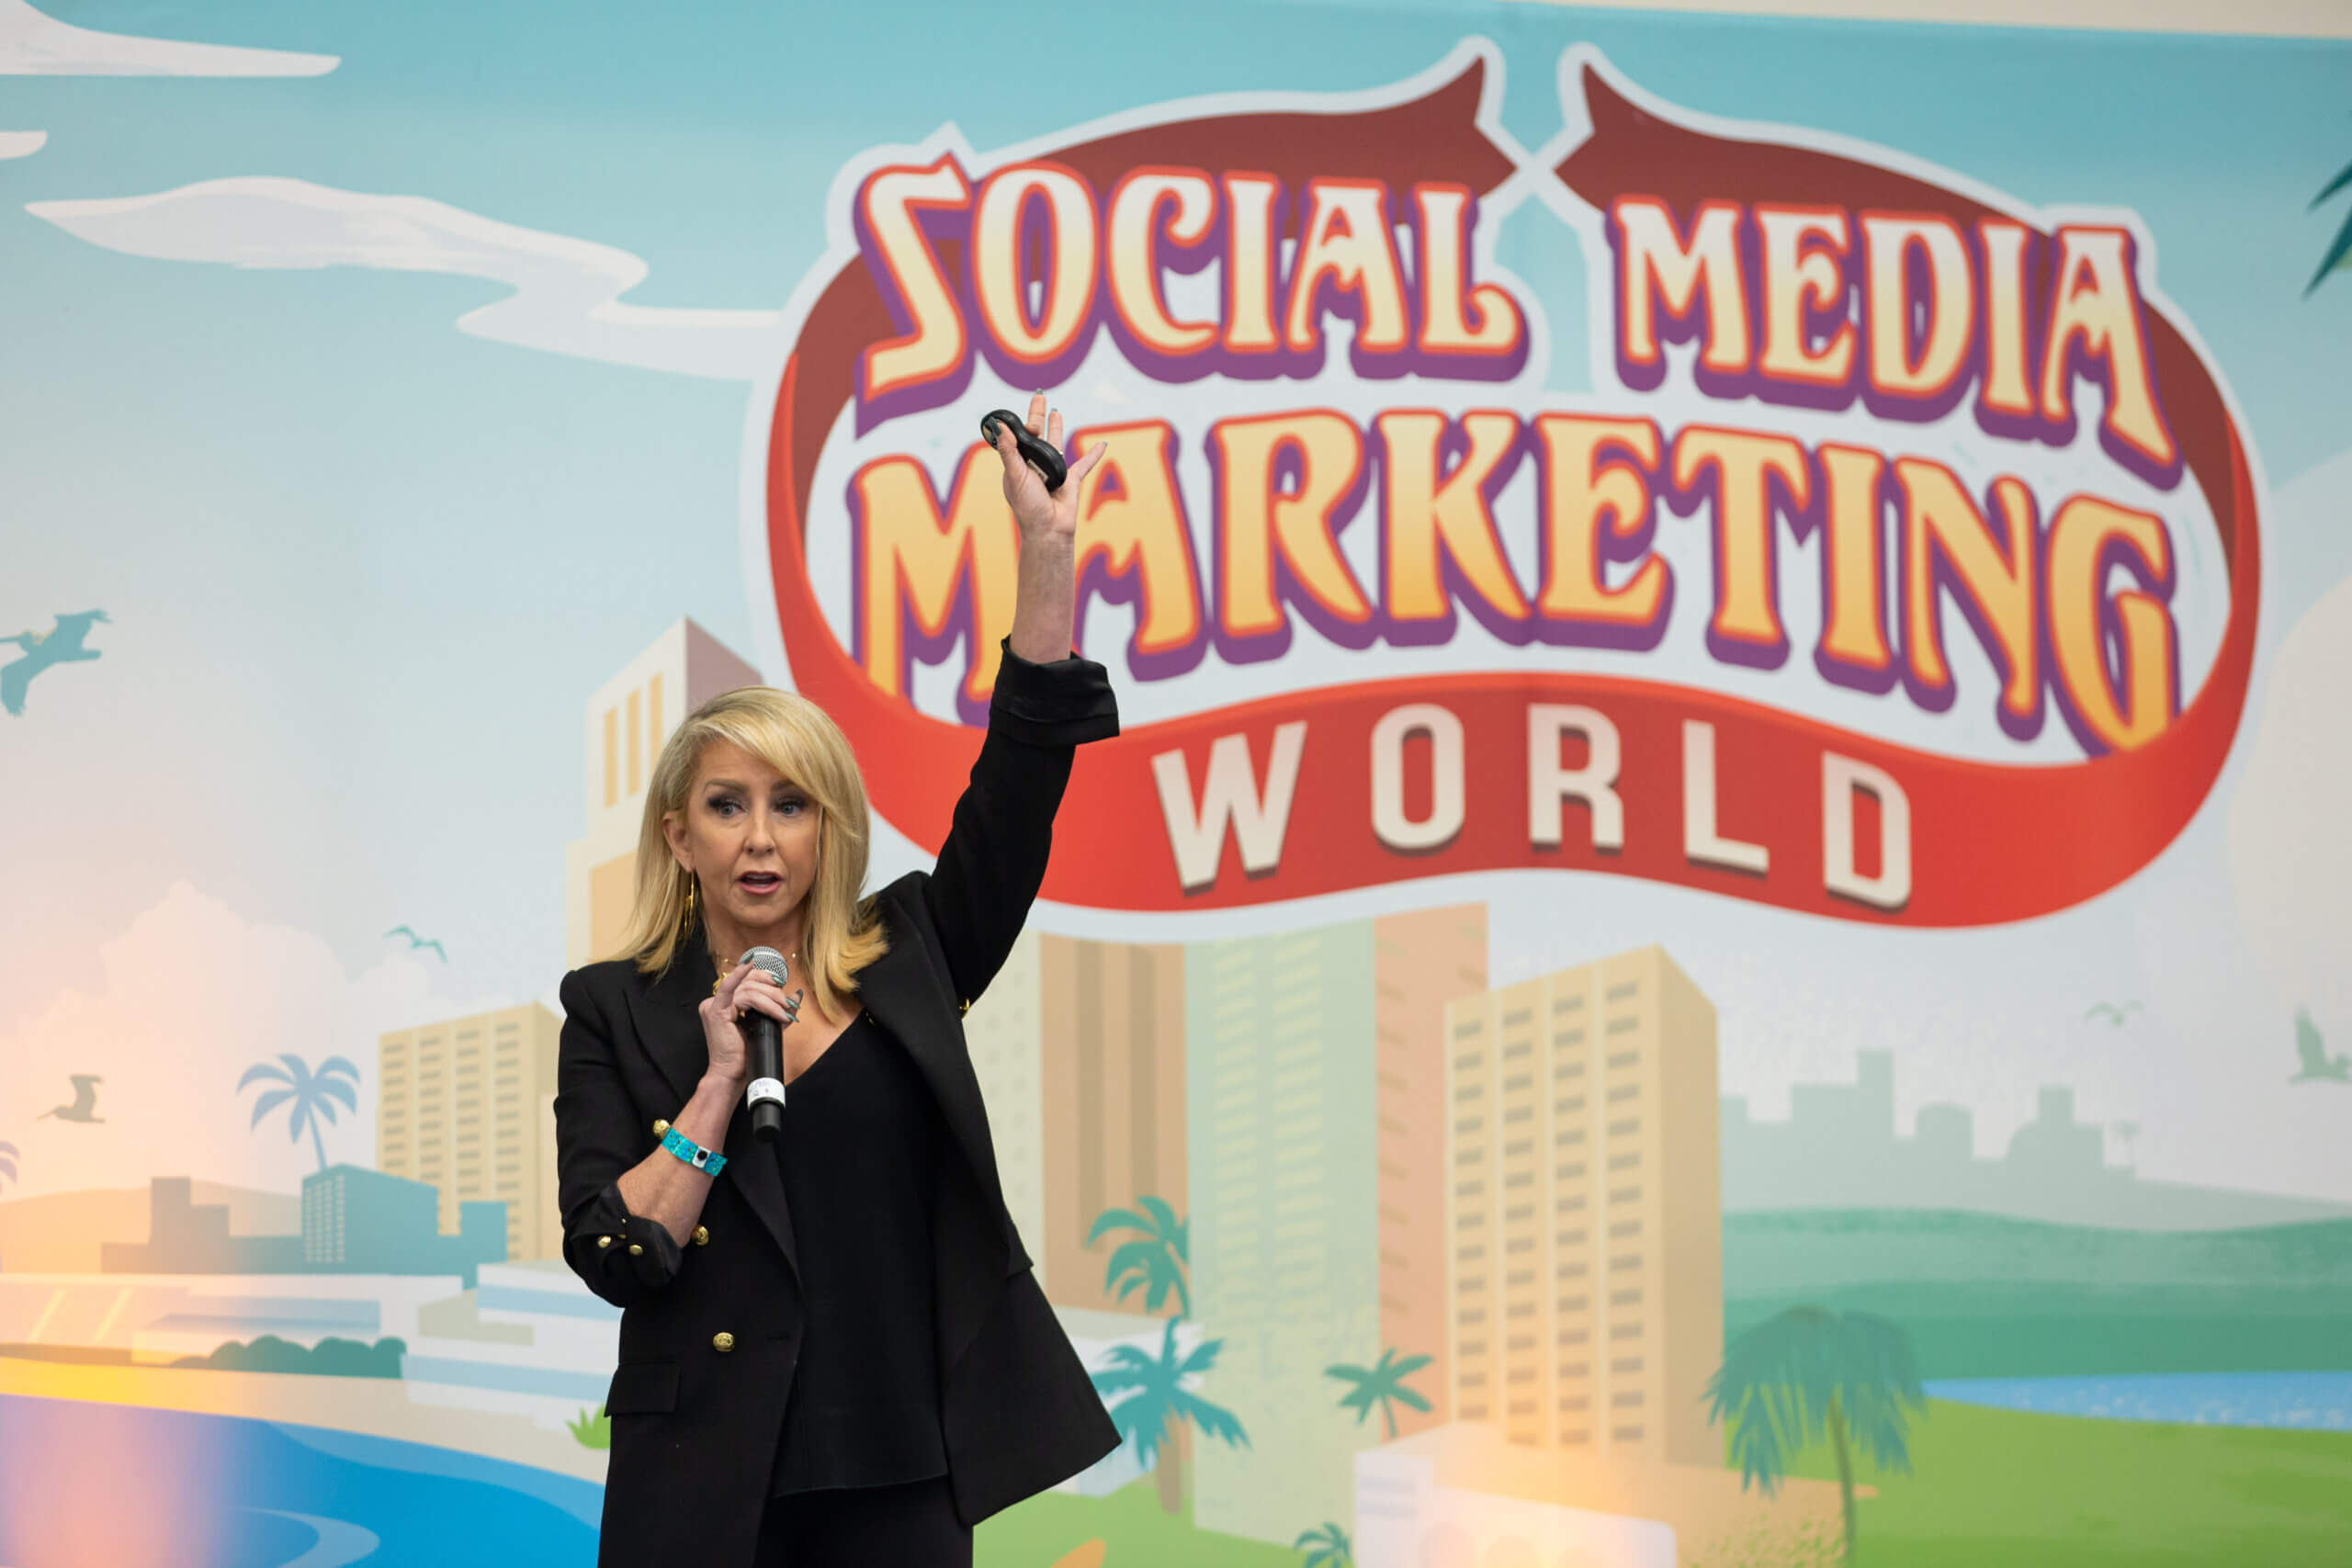  közösségi média Marketing világ